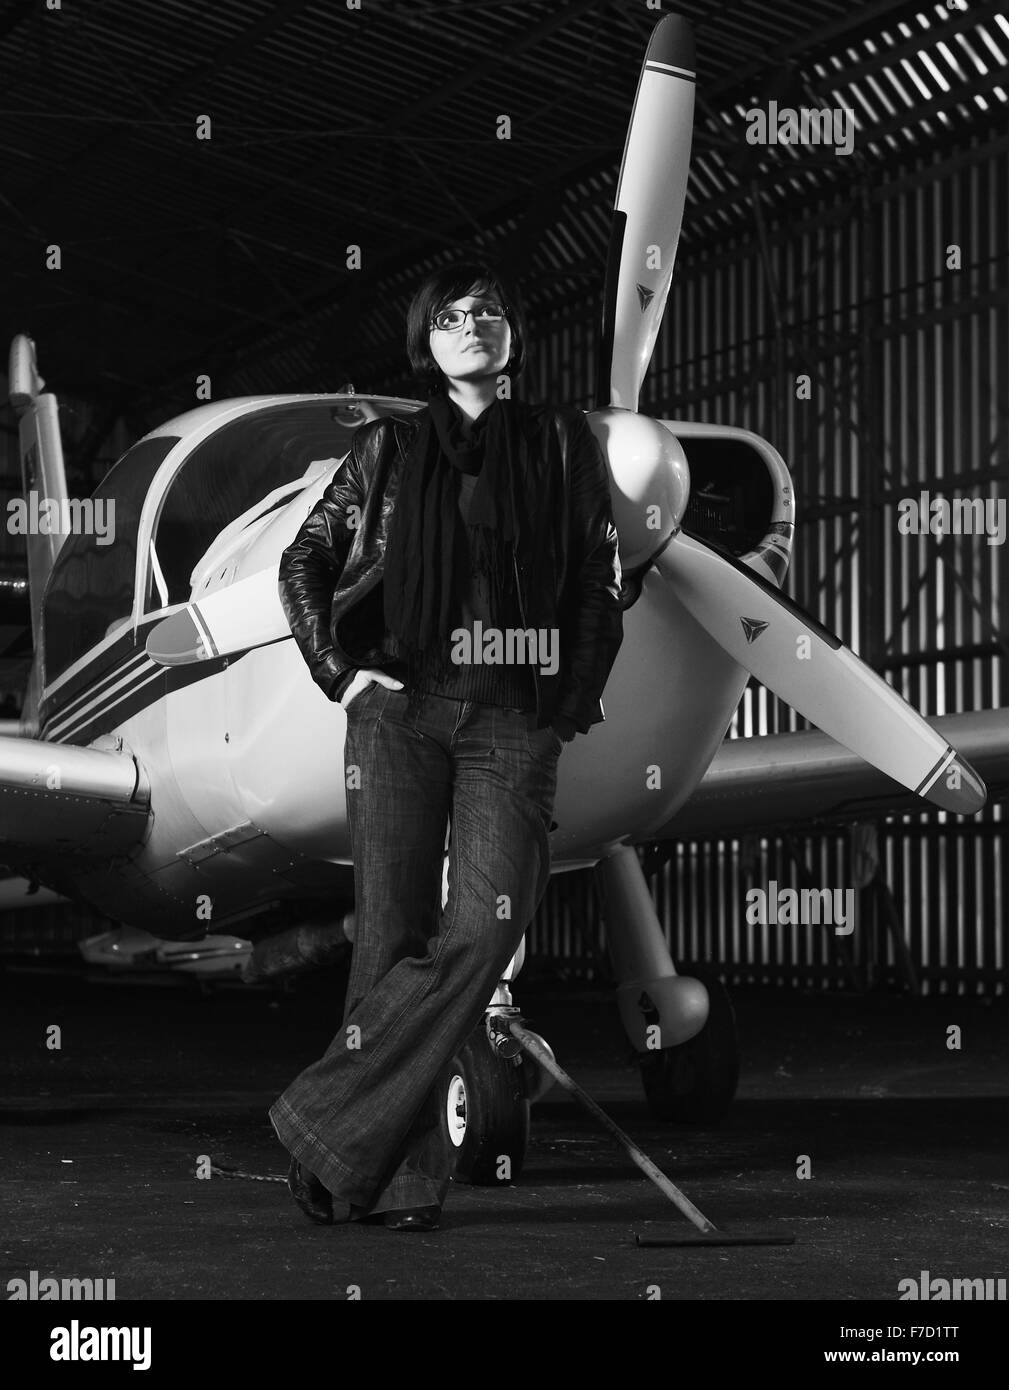 schöne junge Frau Modell in modischer Kleidung posieren vor altes private Flugzeug Stockfoto